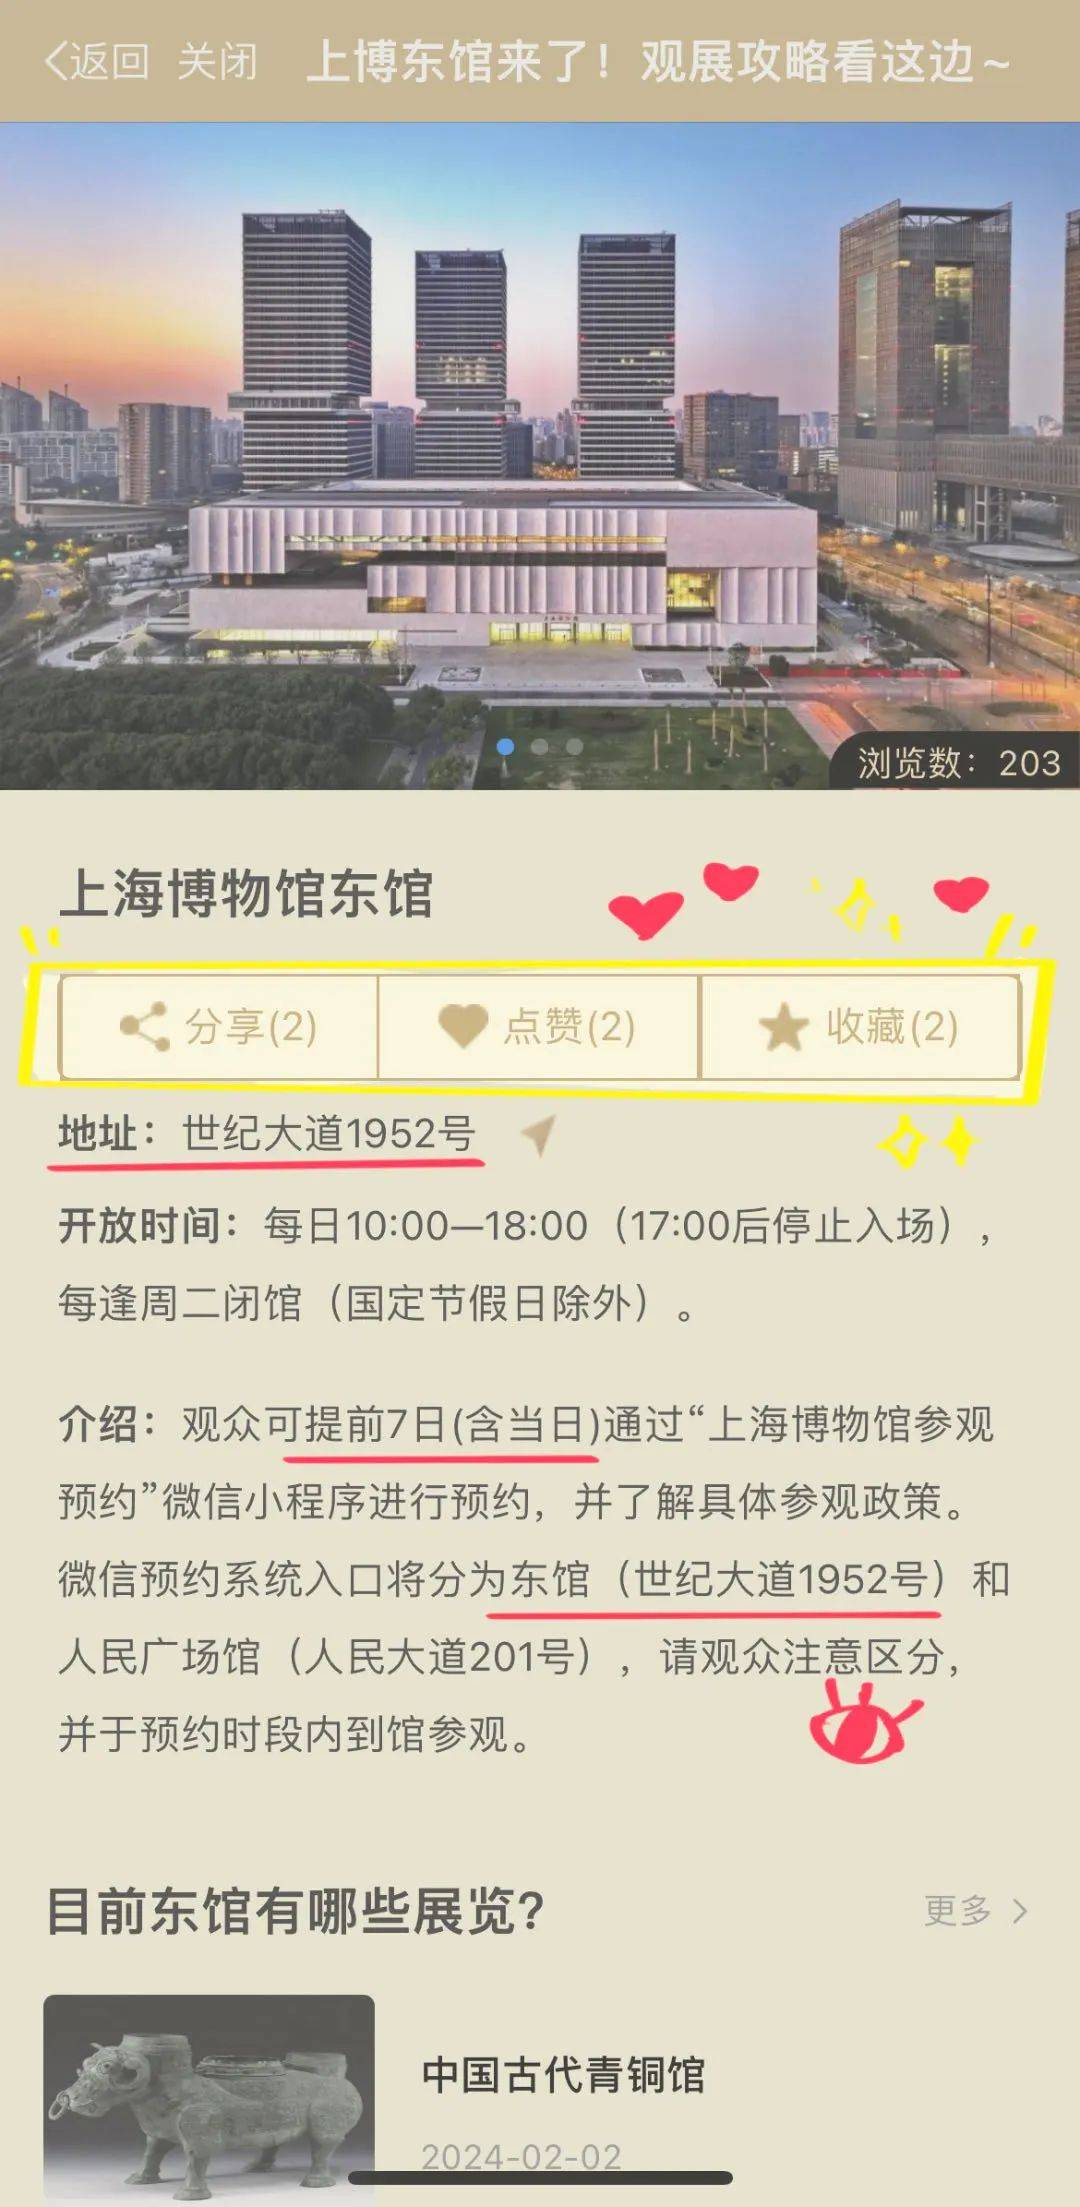 或者,打开随申办市民云app,扫一扫下方二维码,直接进入上海东馆